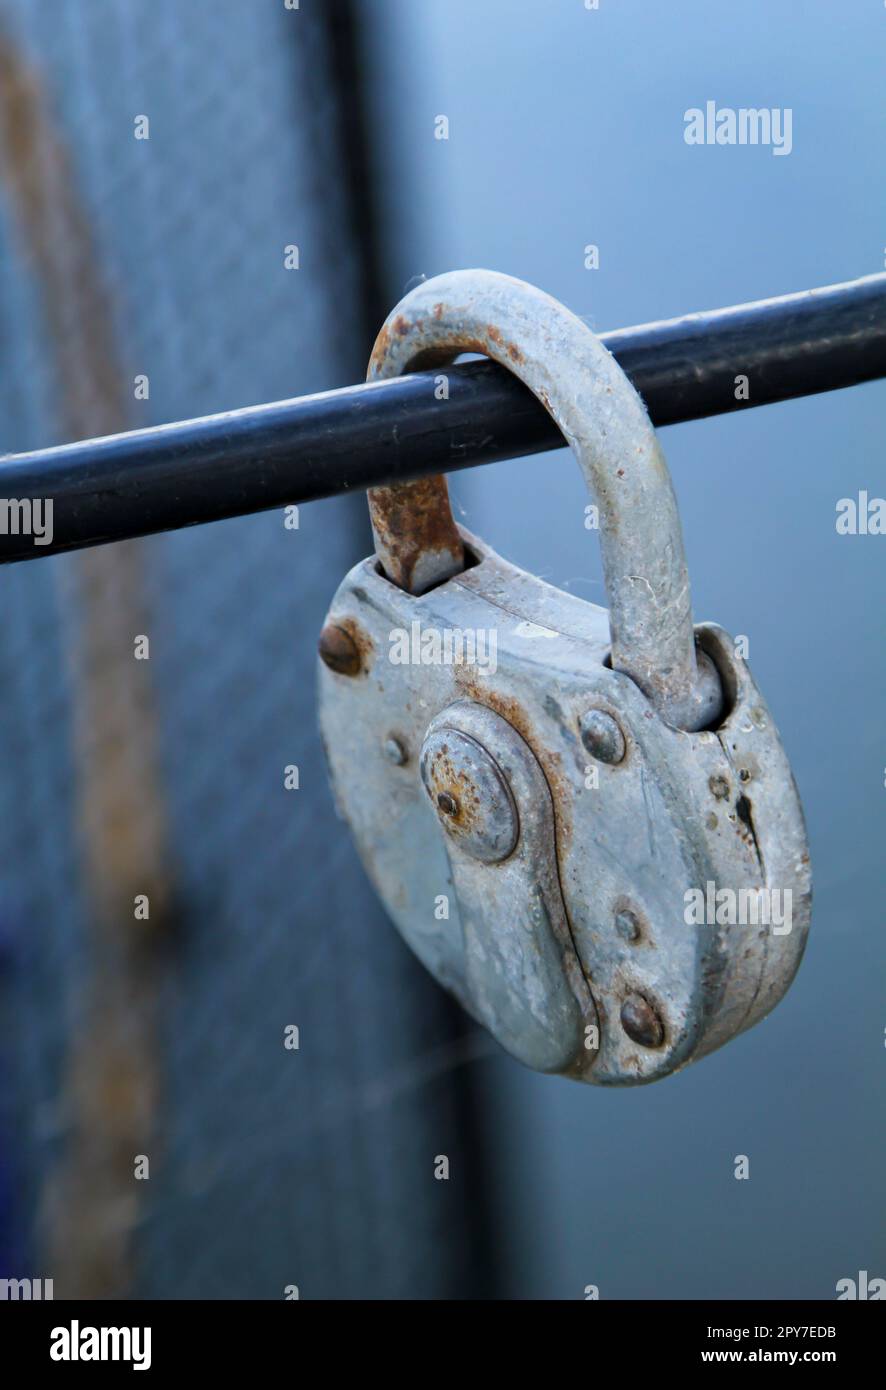 Un vieux cadenas, comme serrure d'amour, preuve d'amour attaché à une grille métallique. Banque D'Images